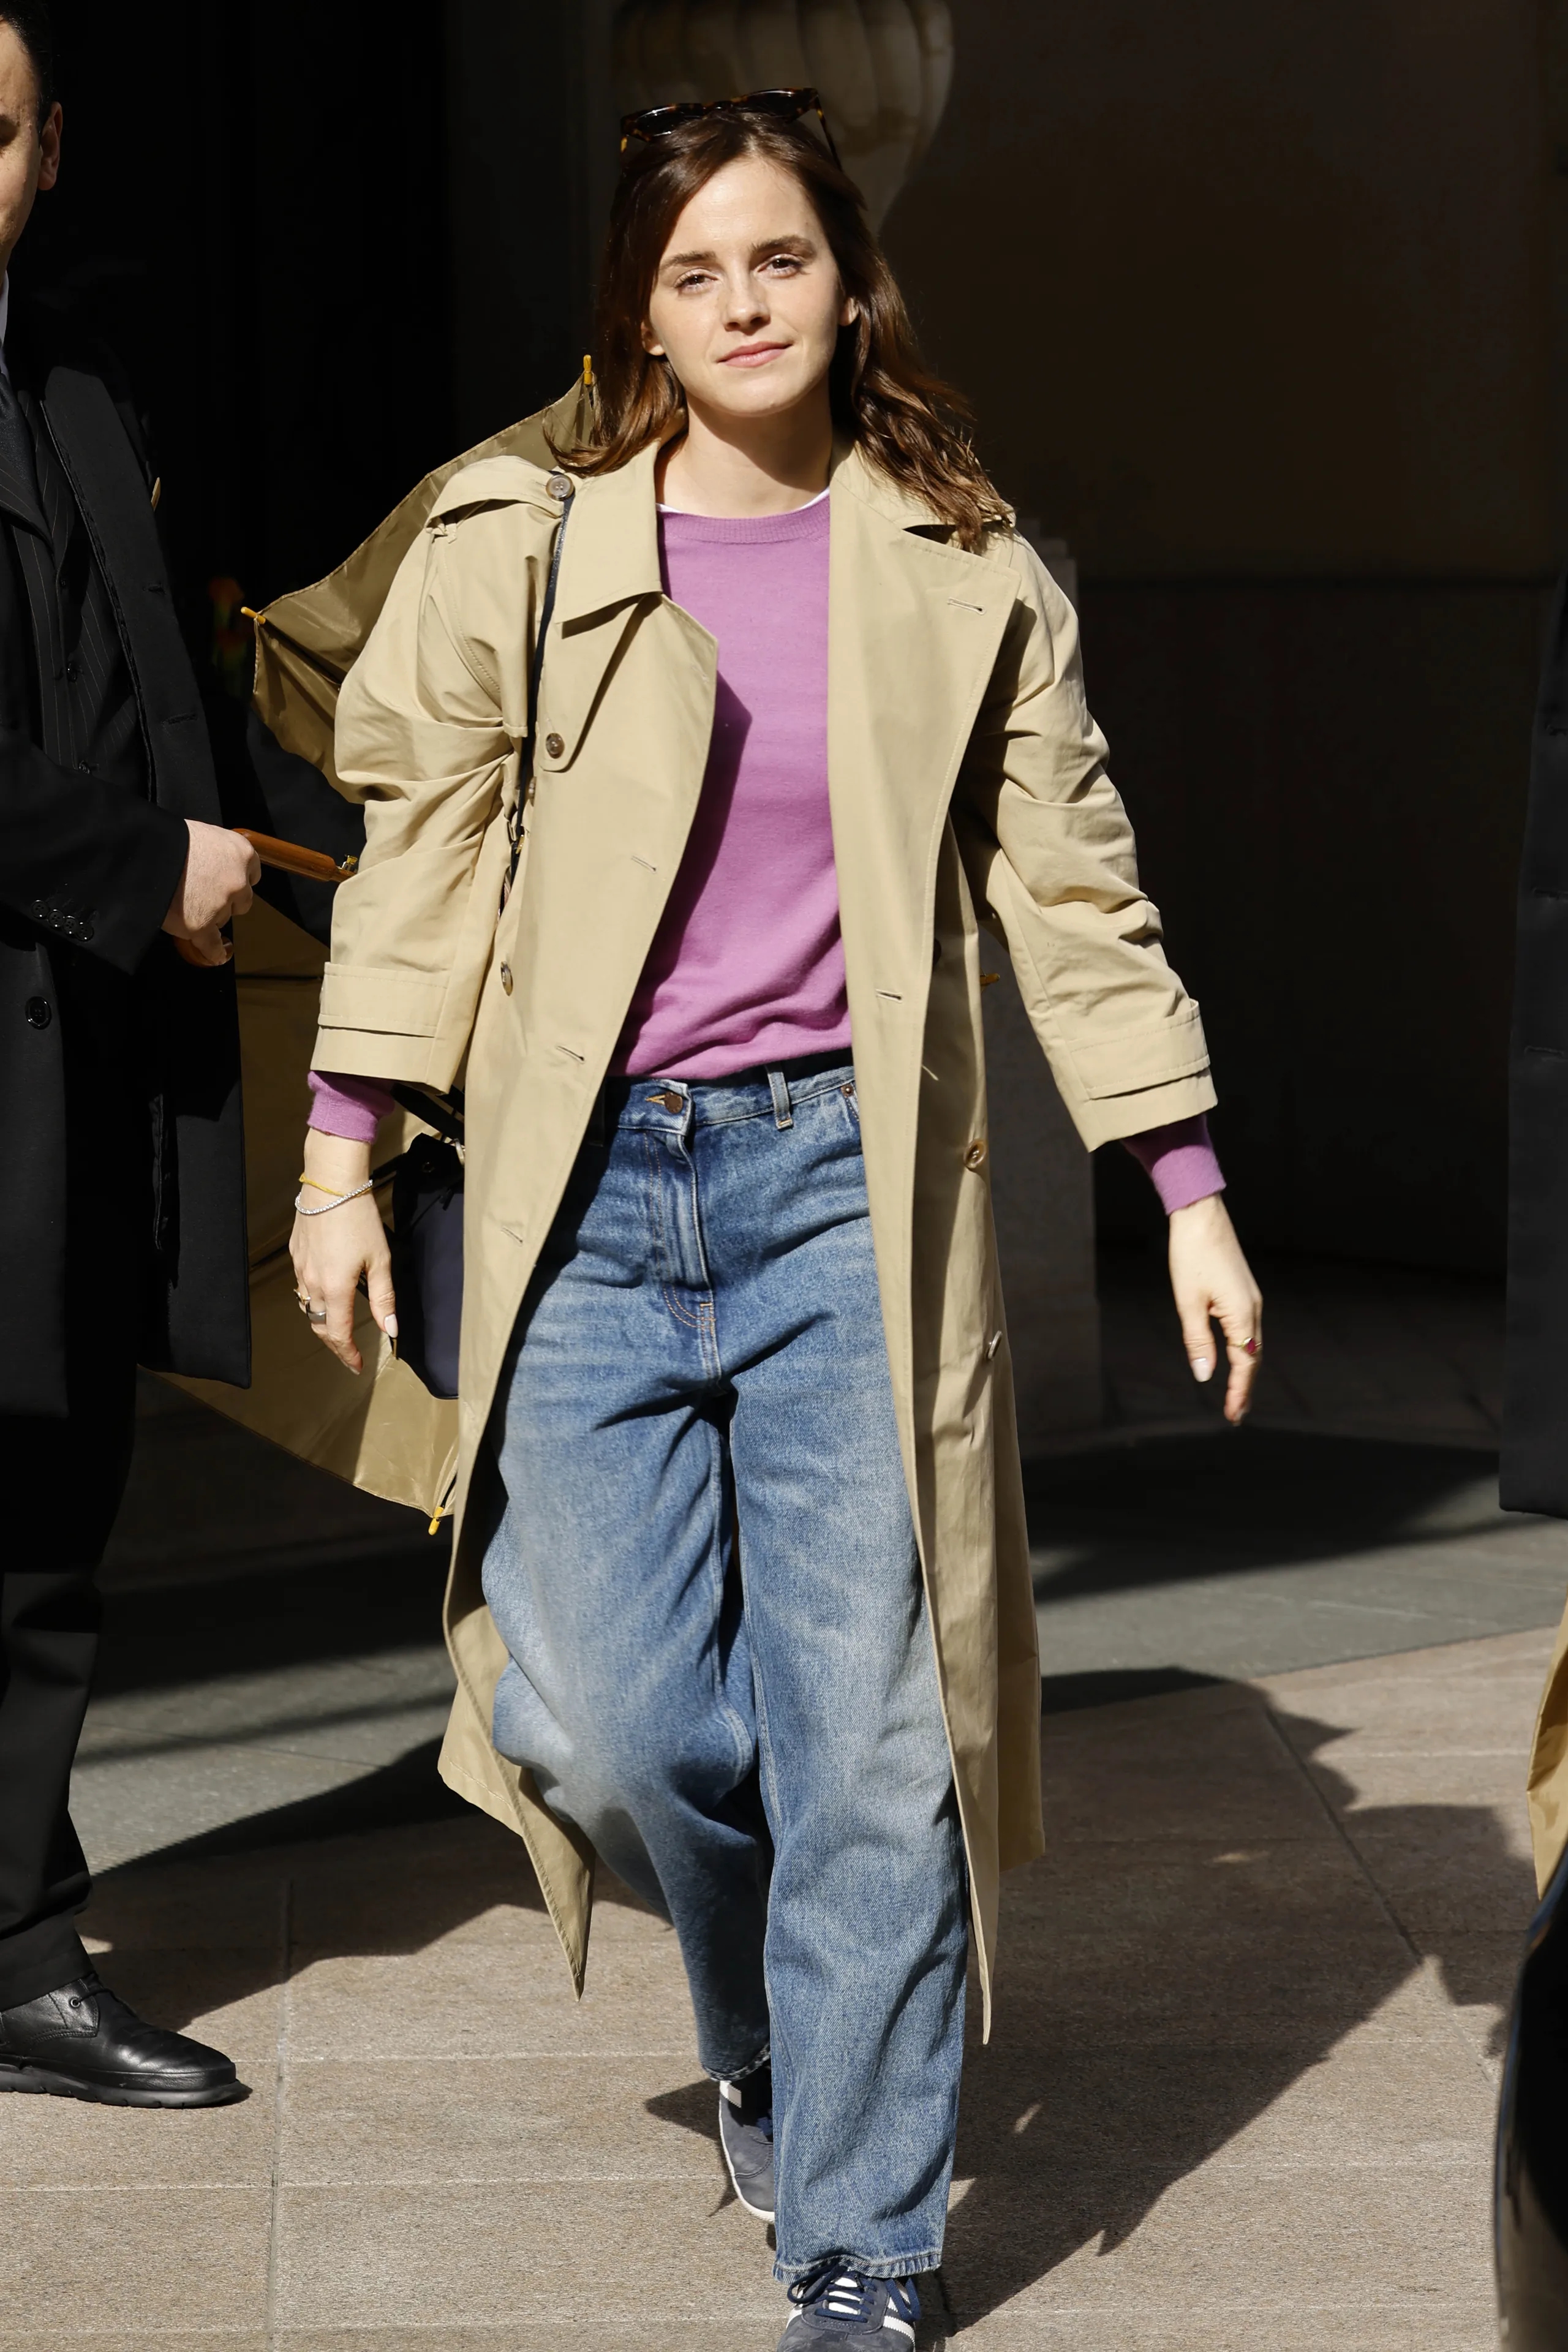 Thời trang của Emma Watson ngày càng sành điệu xuất sắc dù vẫn trung thành với phong cách tối giản - Ảnh 6.